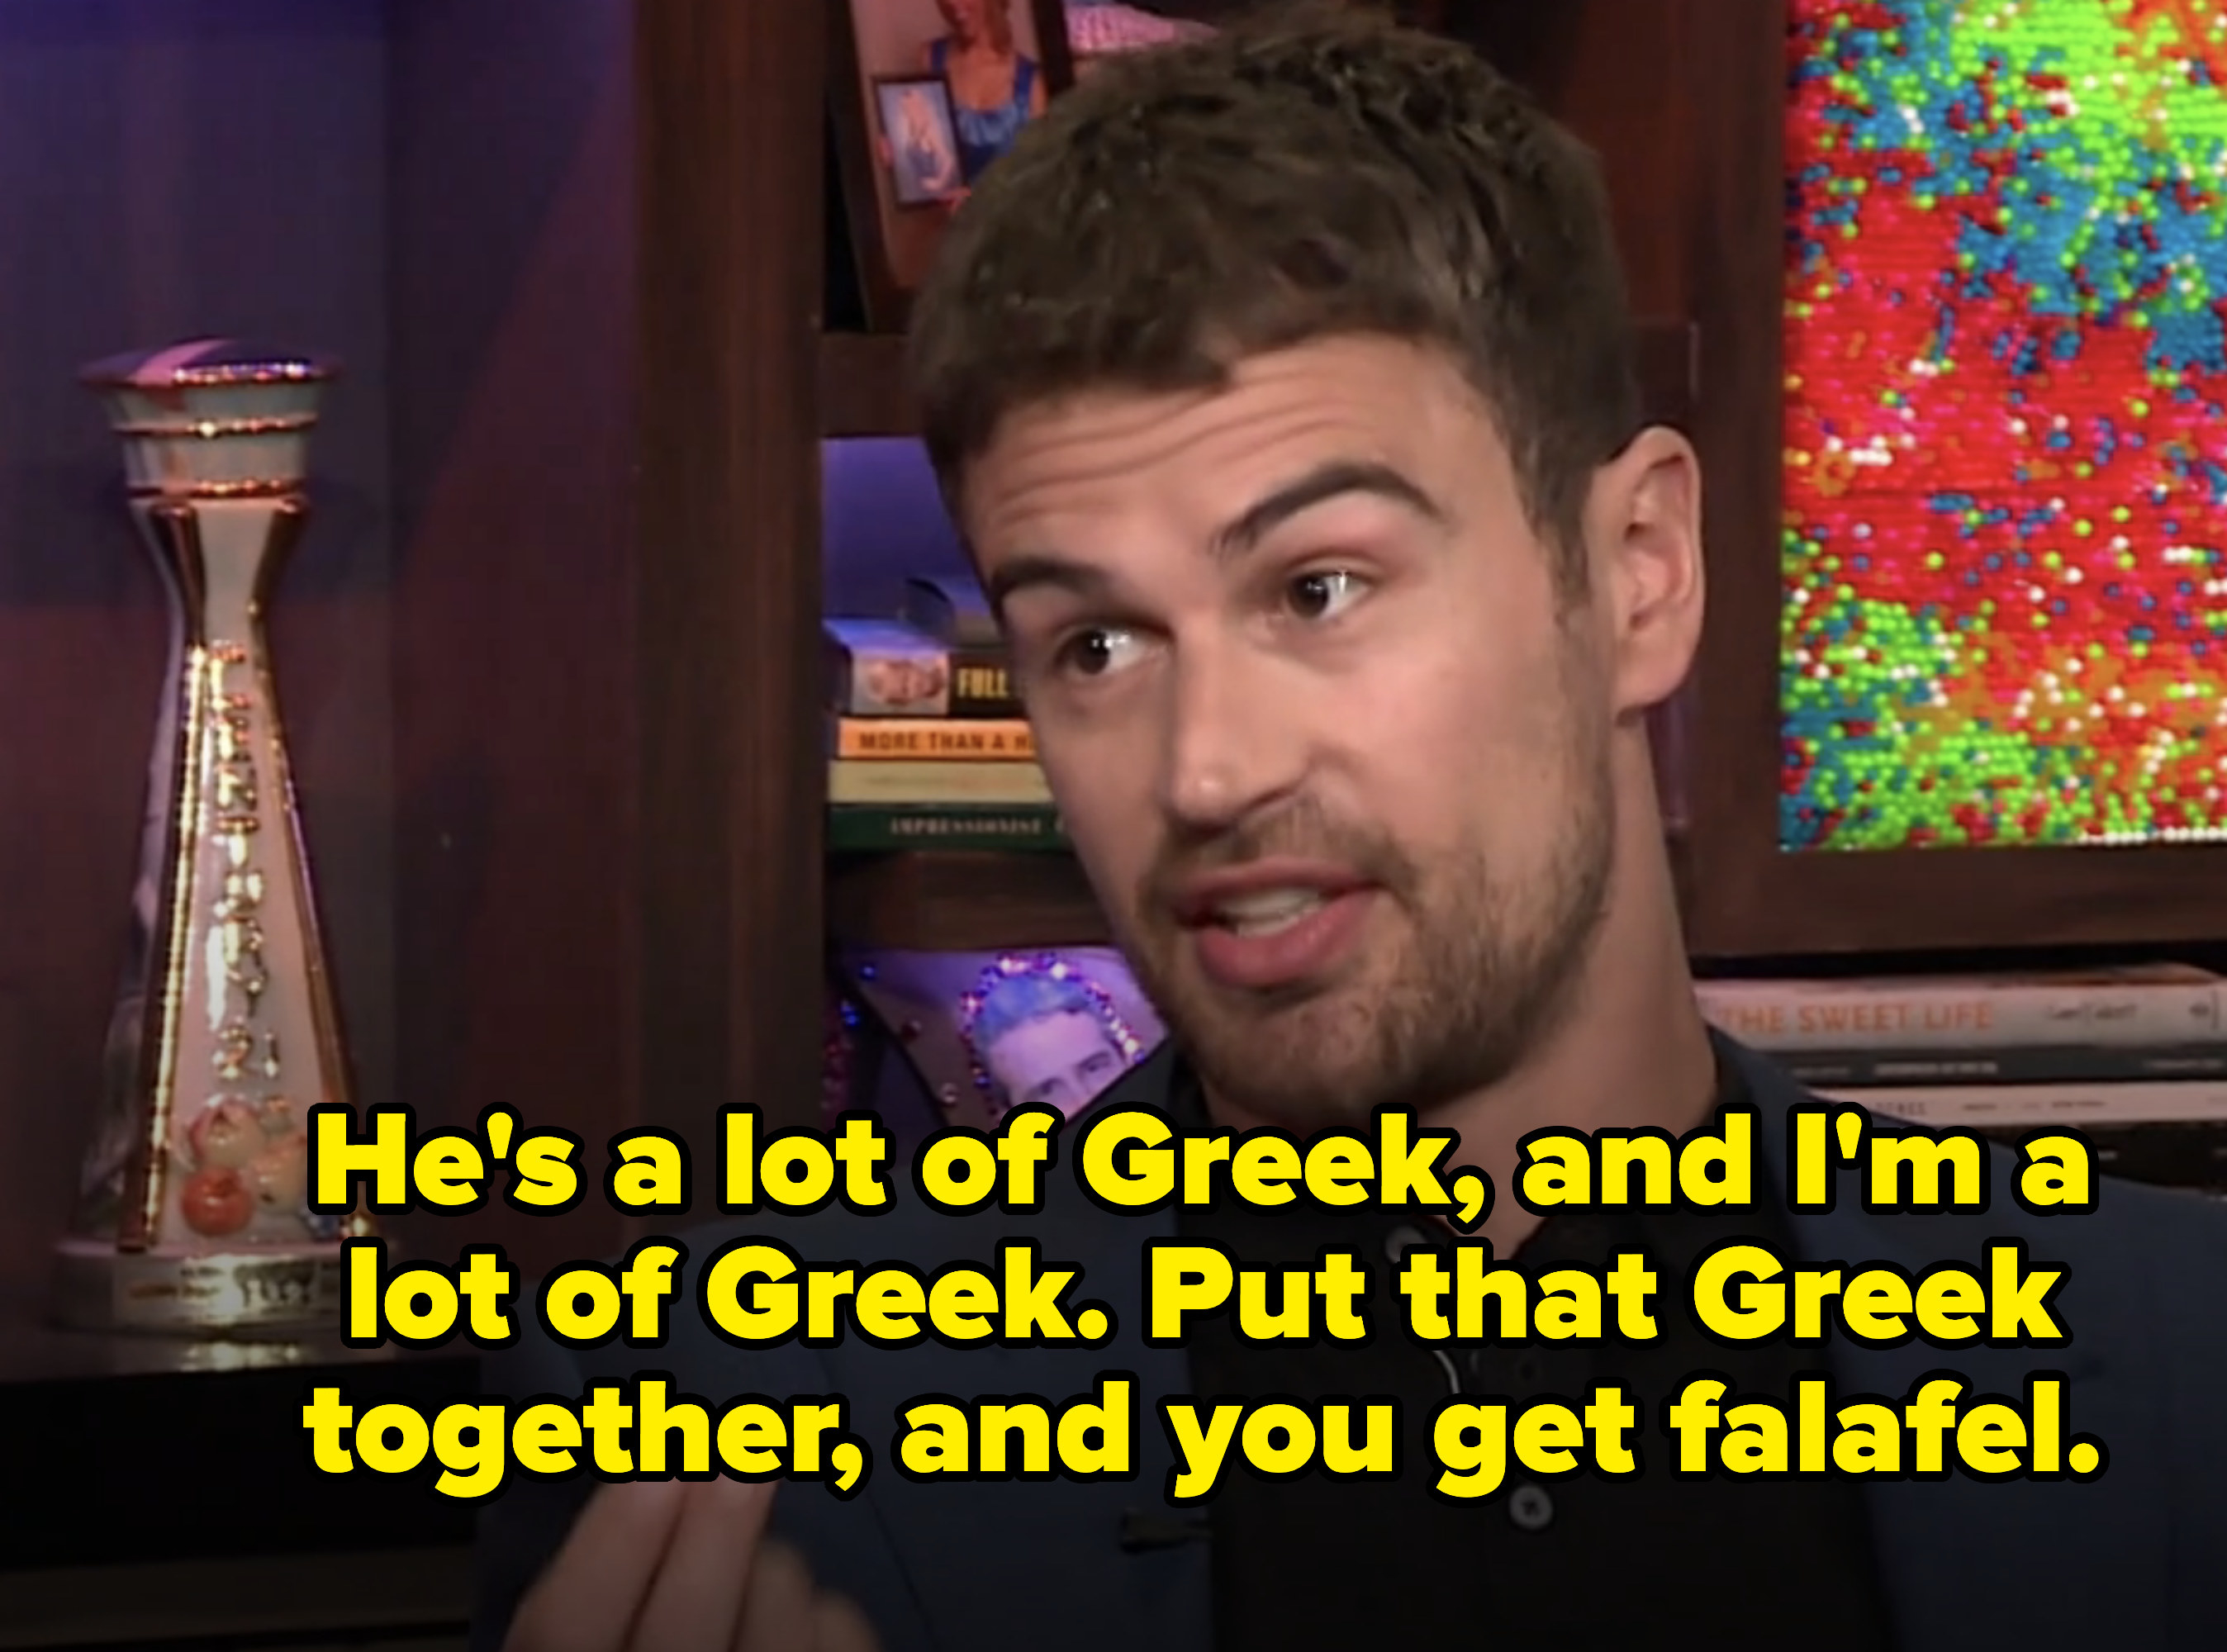 &quot;he&#x27;s a lot of Greek and i&#x27;m a lot of Greek, that Greek together and you get falafel